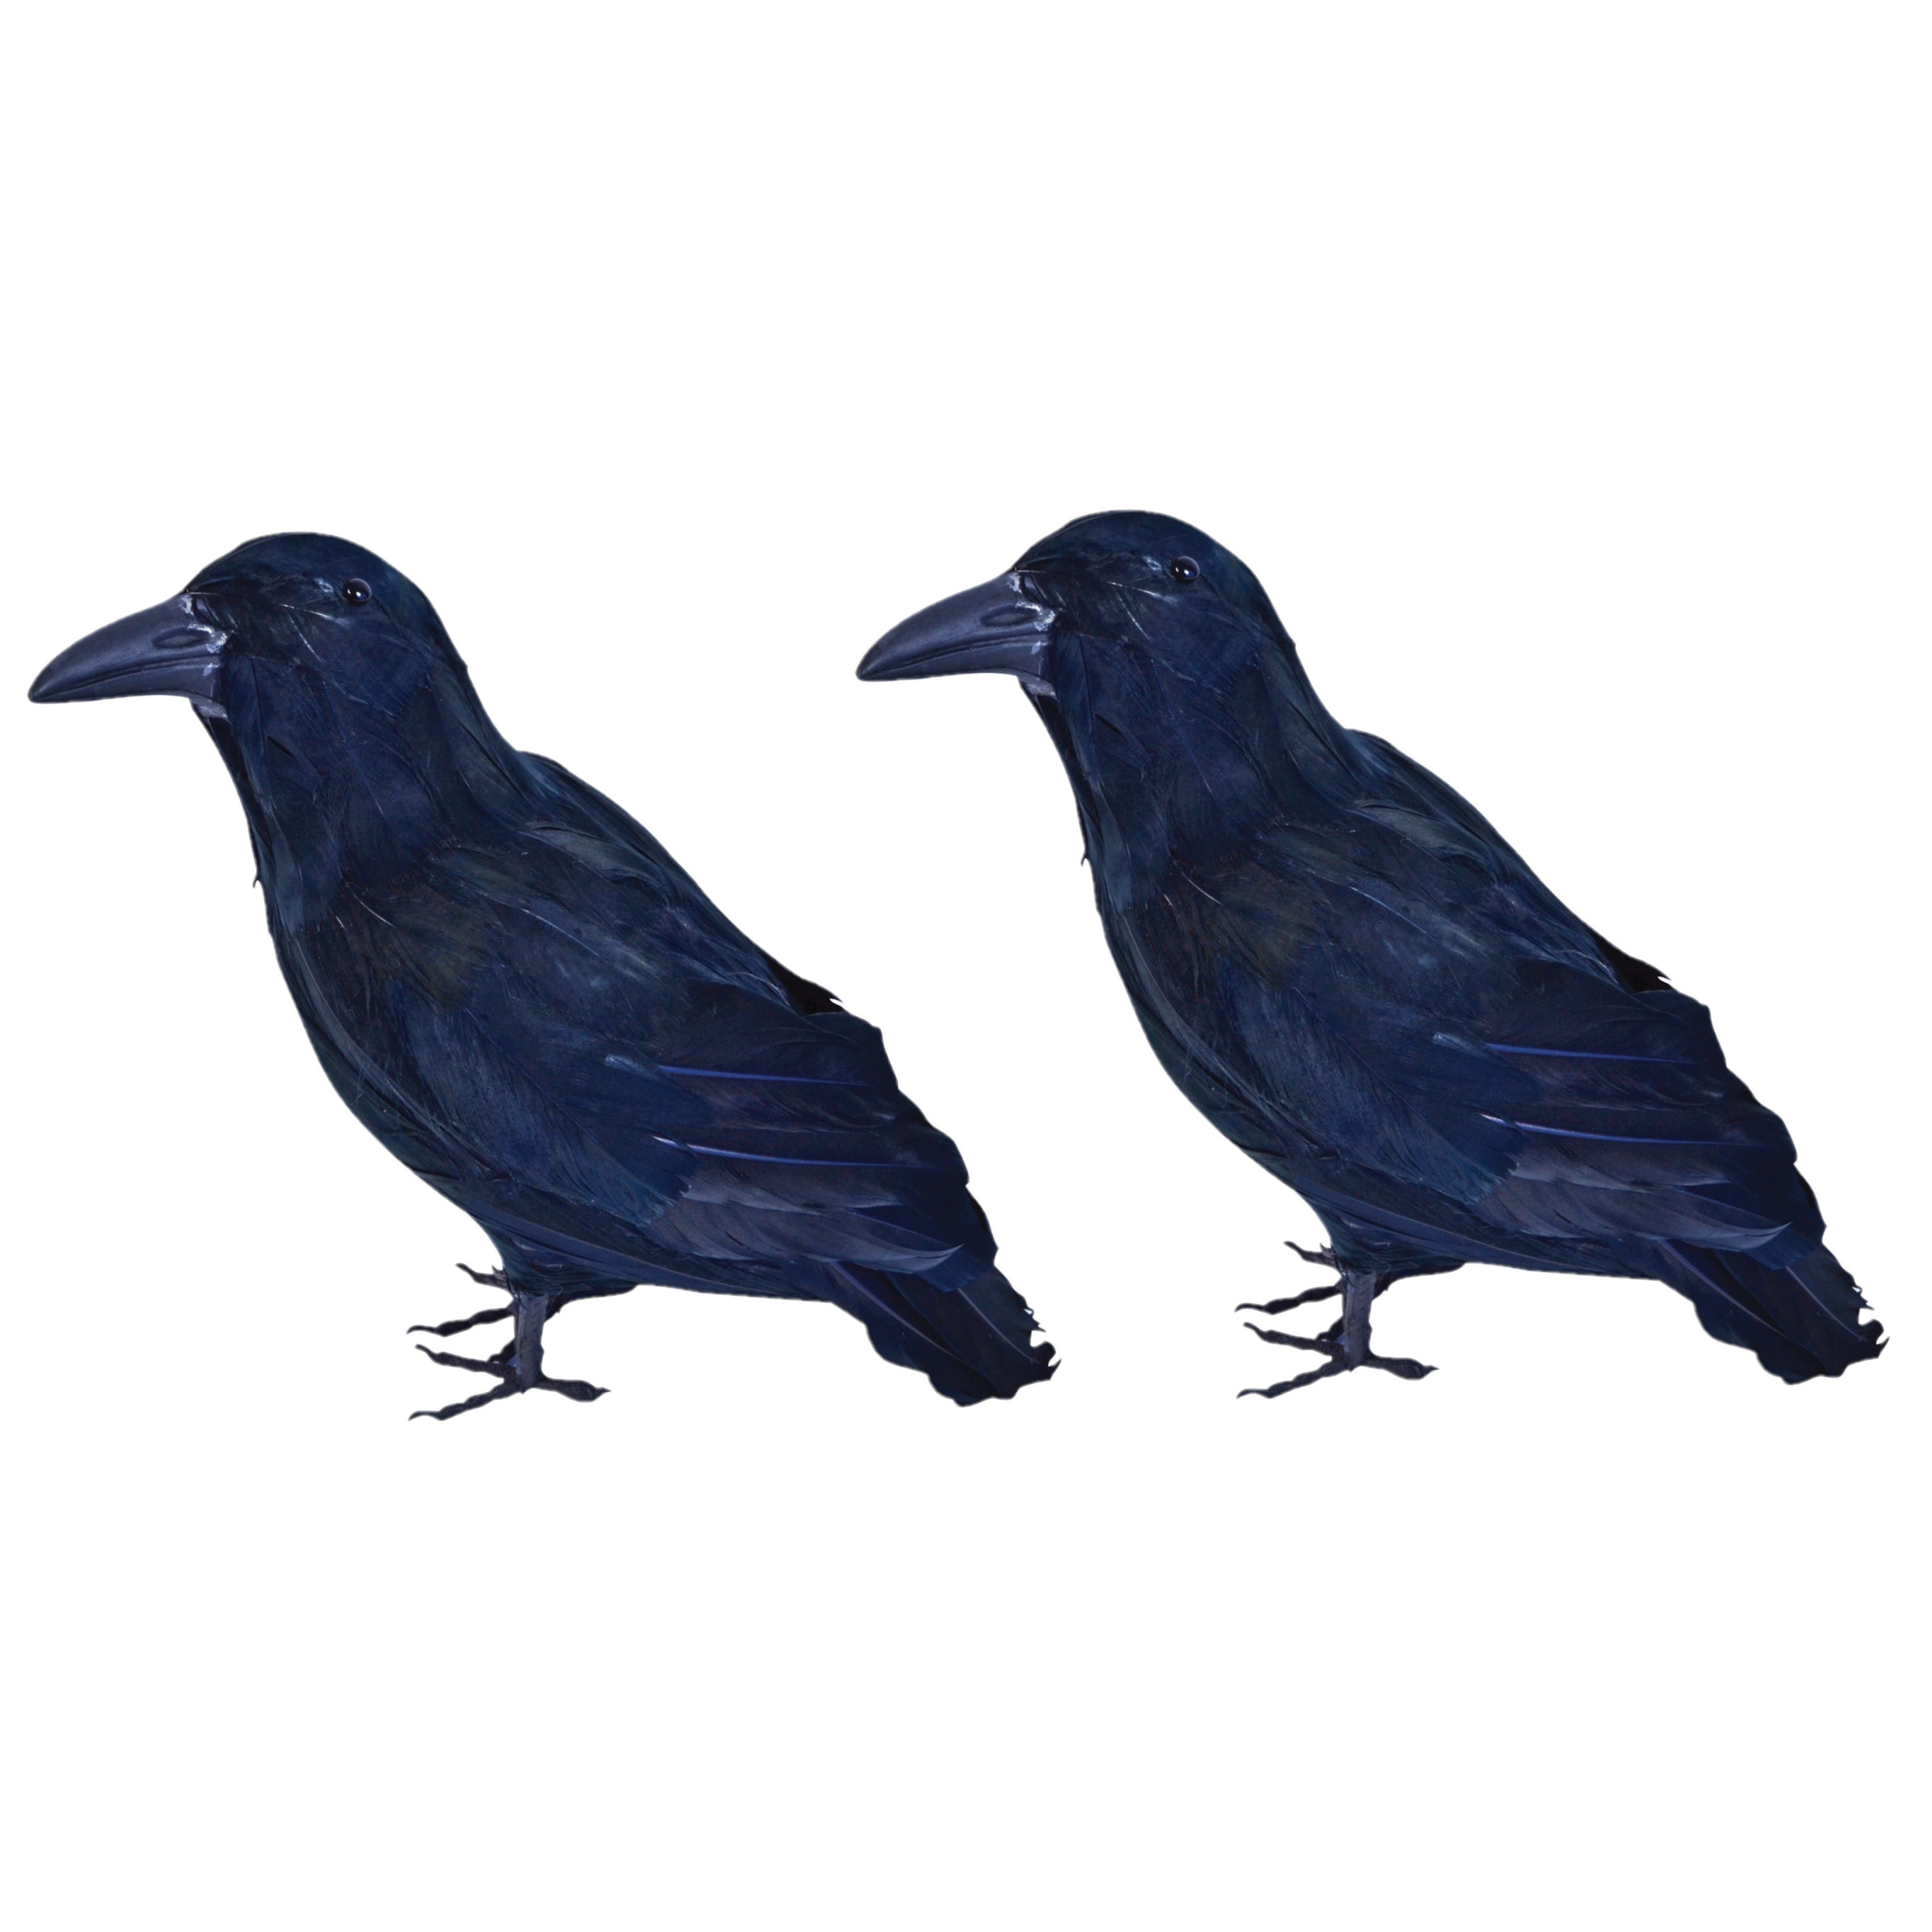 Afbeelding 3x Horror raven/kraaien zwart 30 cm door Animals Giftshop